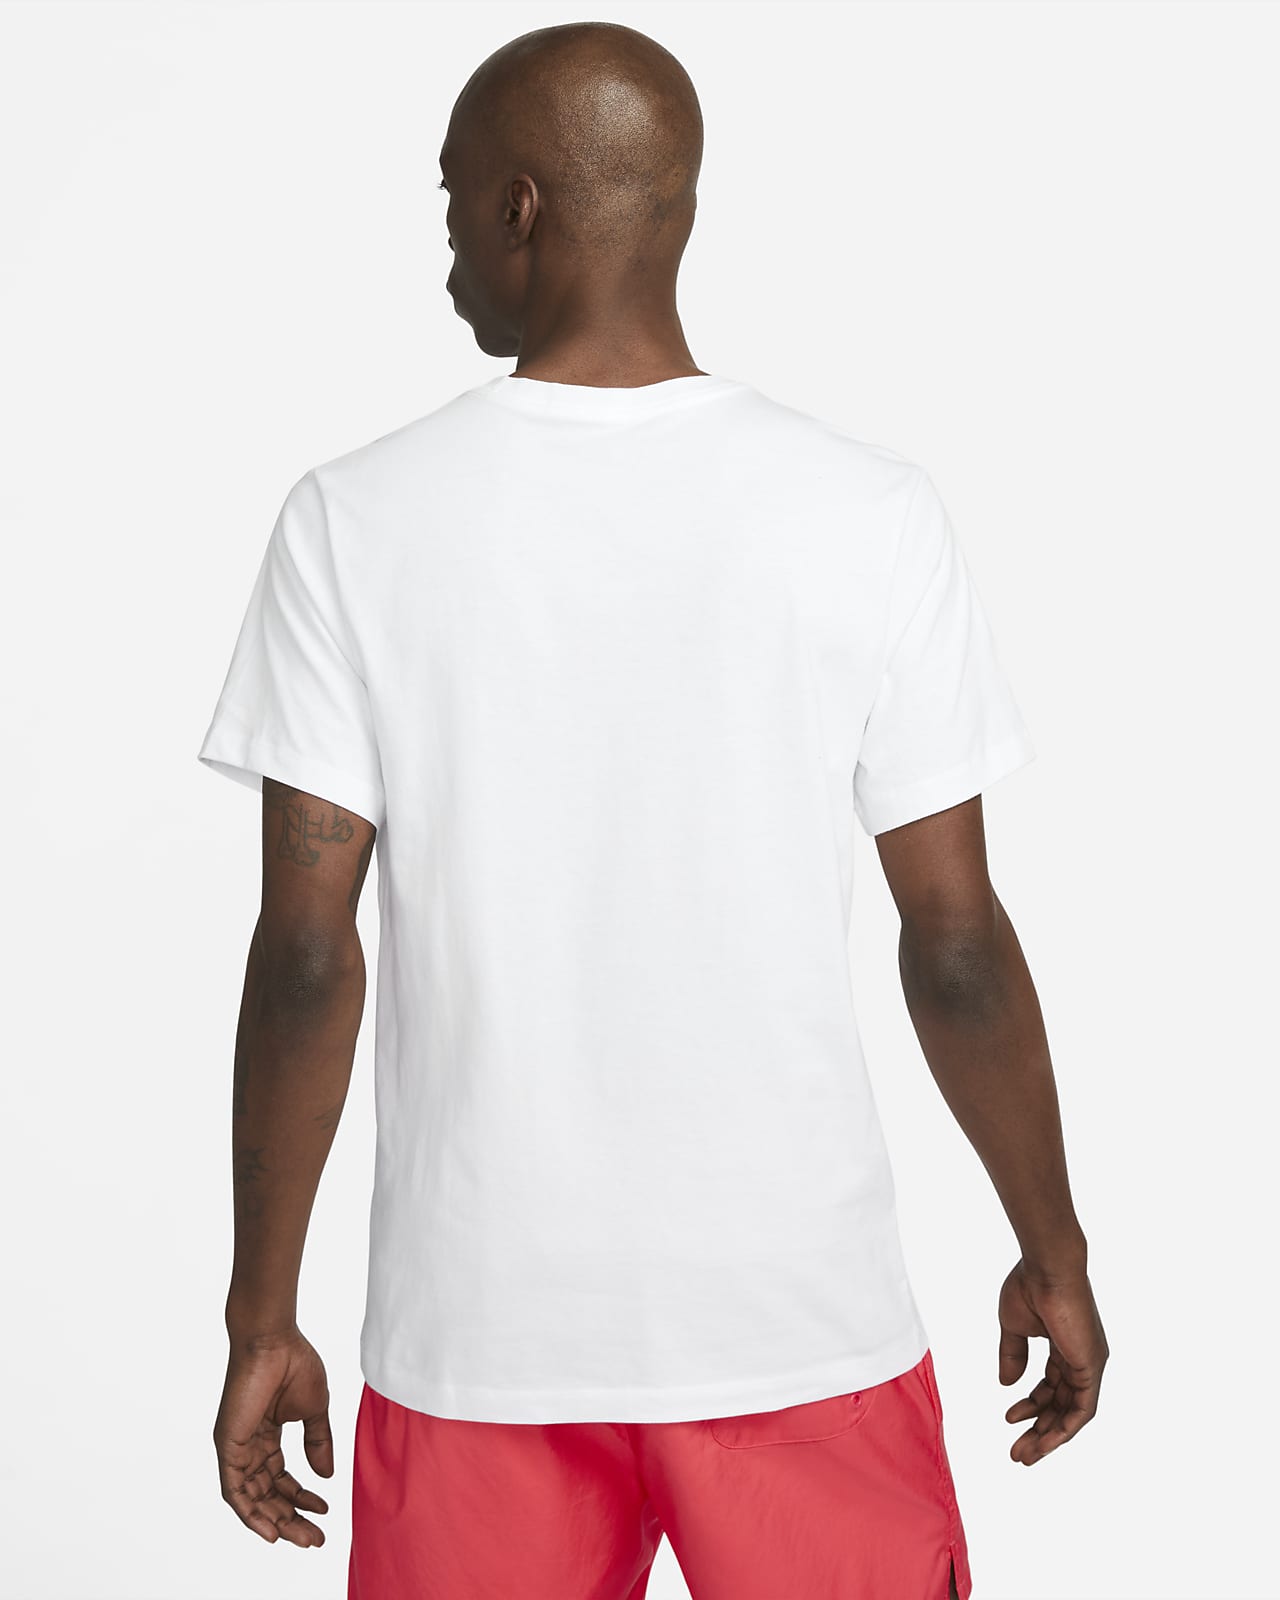 Débardeur Nike Sportswear Blanc pour Homme - FB9764-100